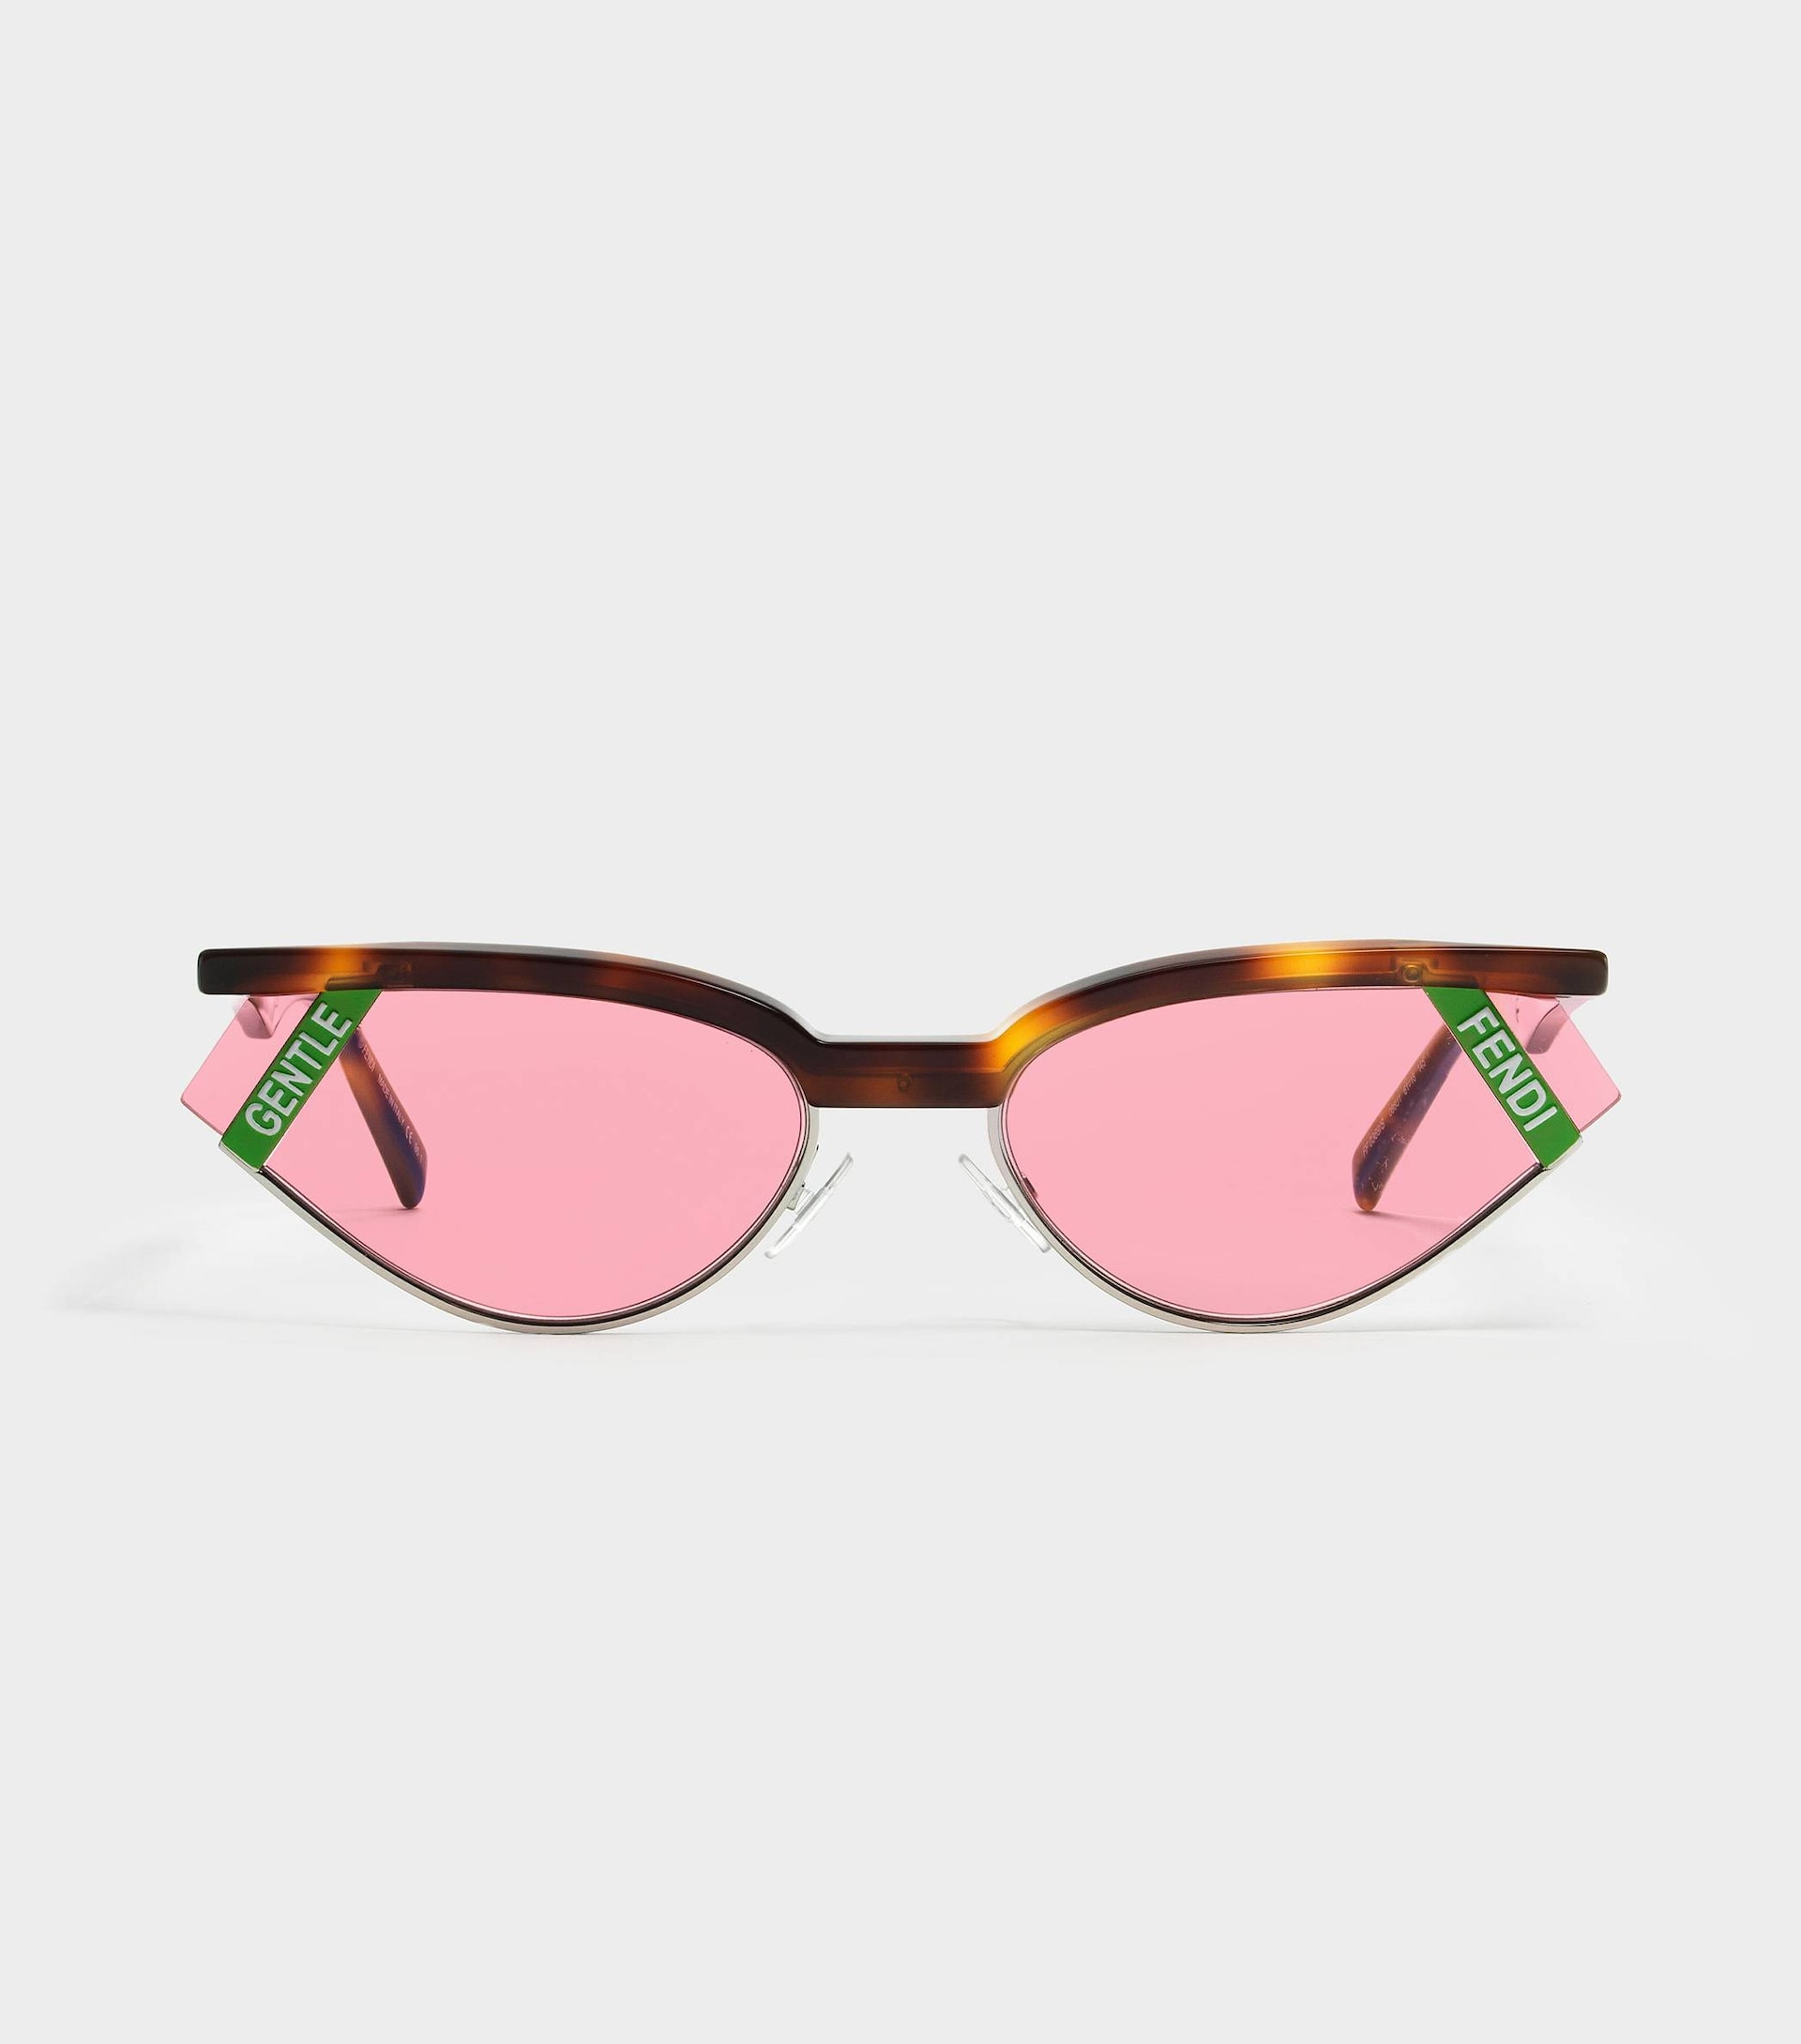 Gentle Fendi Sunglasses Best Sale, 50% OFF | www.aboutfaceandbody.net